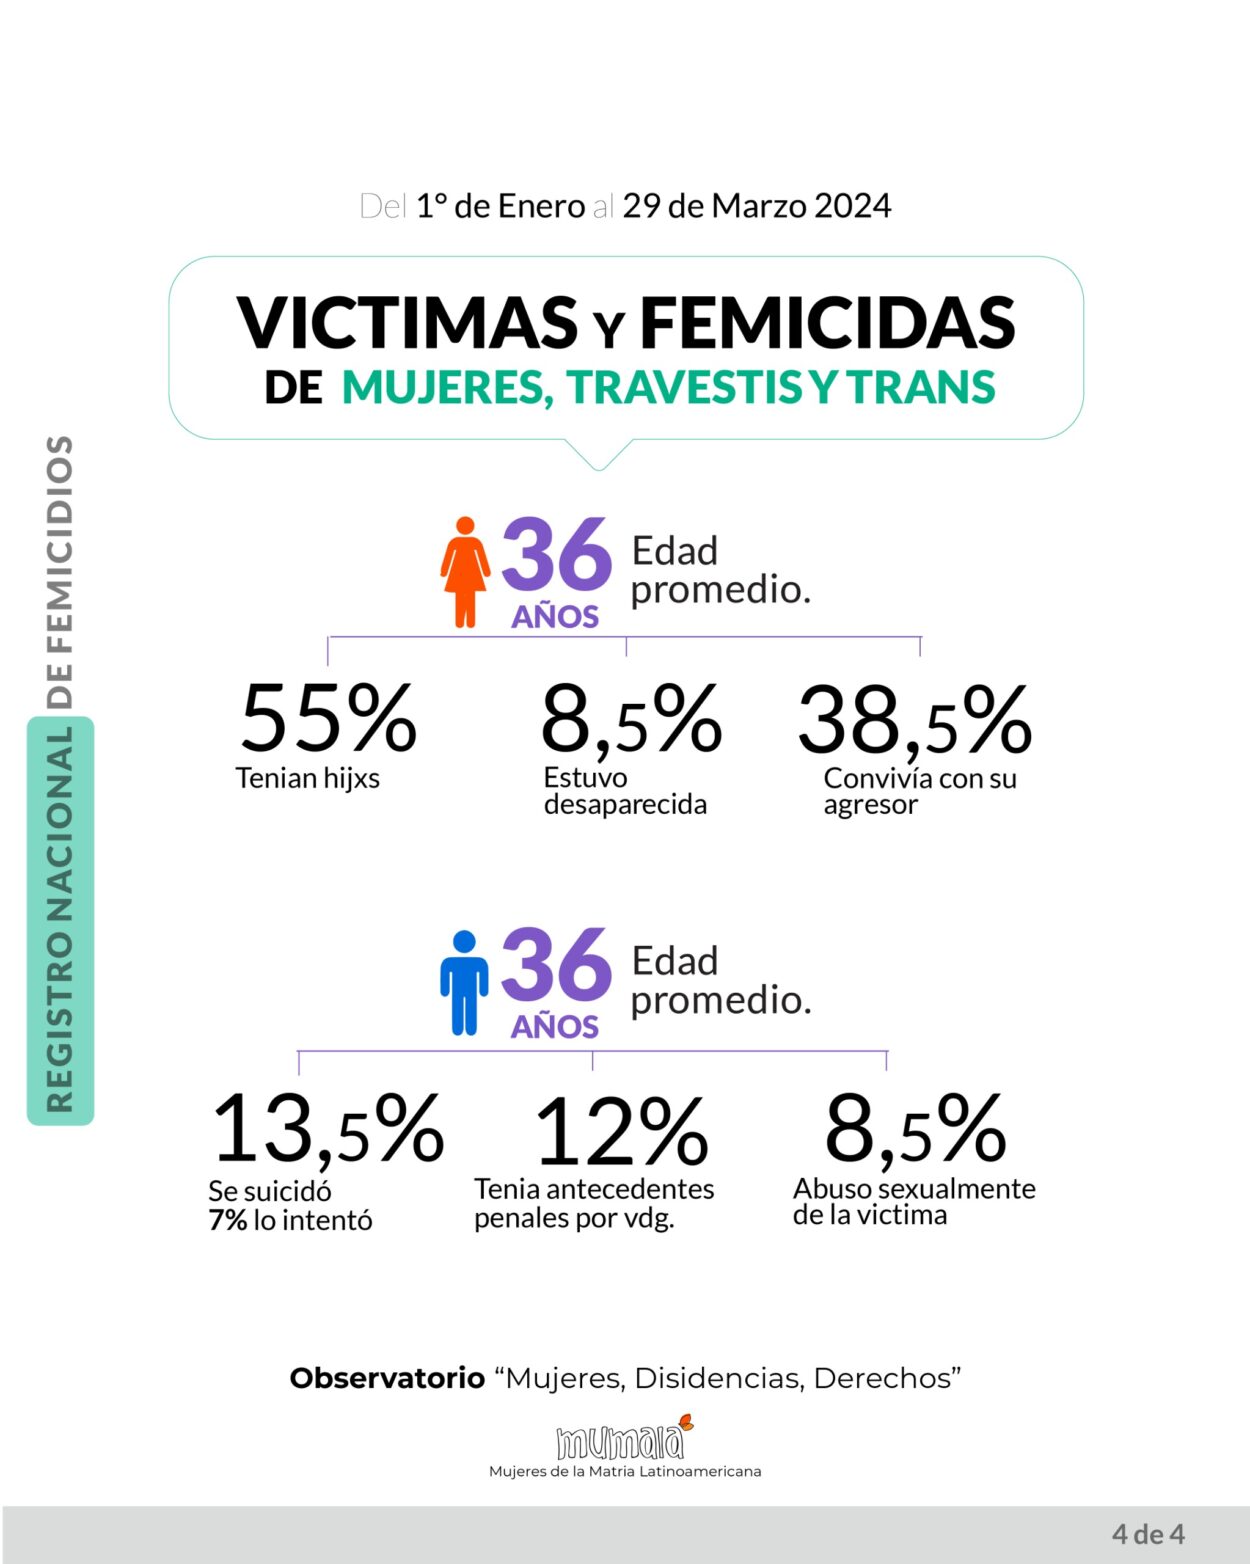 El Observatorio MuMaLa denunció que en 3 meses se han registrado 62 feminicidios, uno cada 35 horas imagen-4